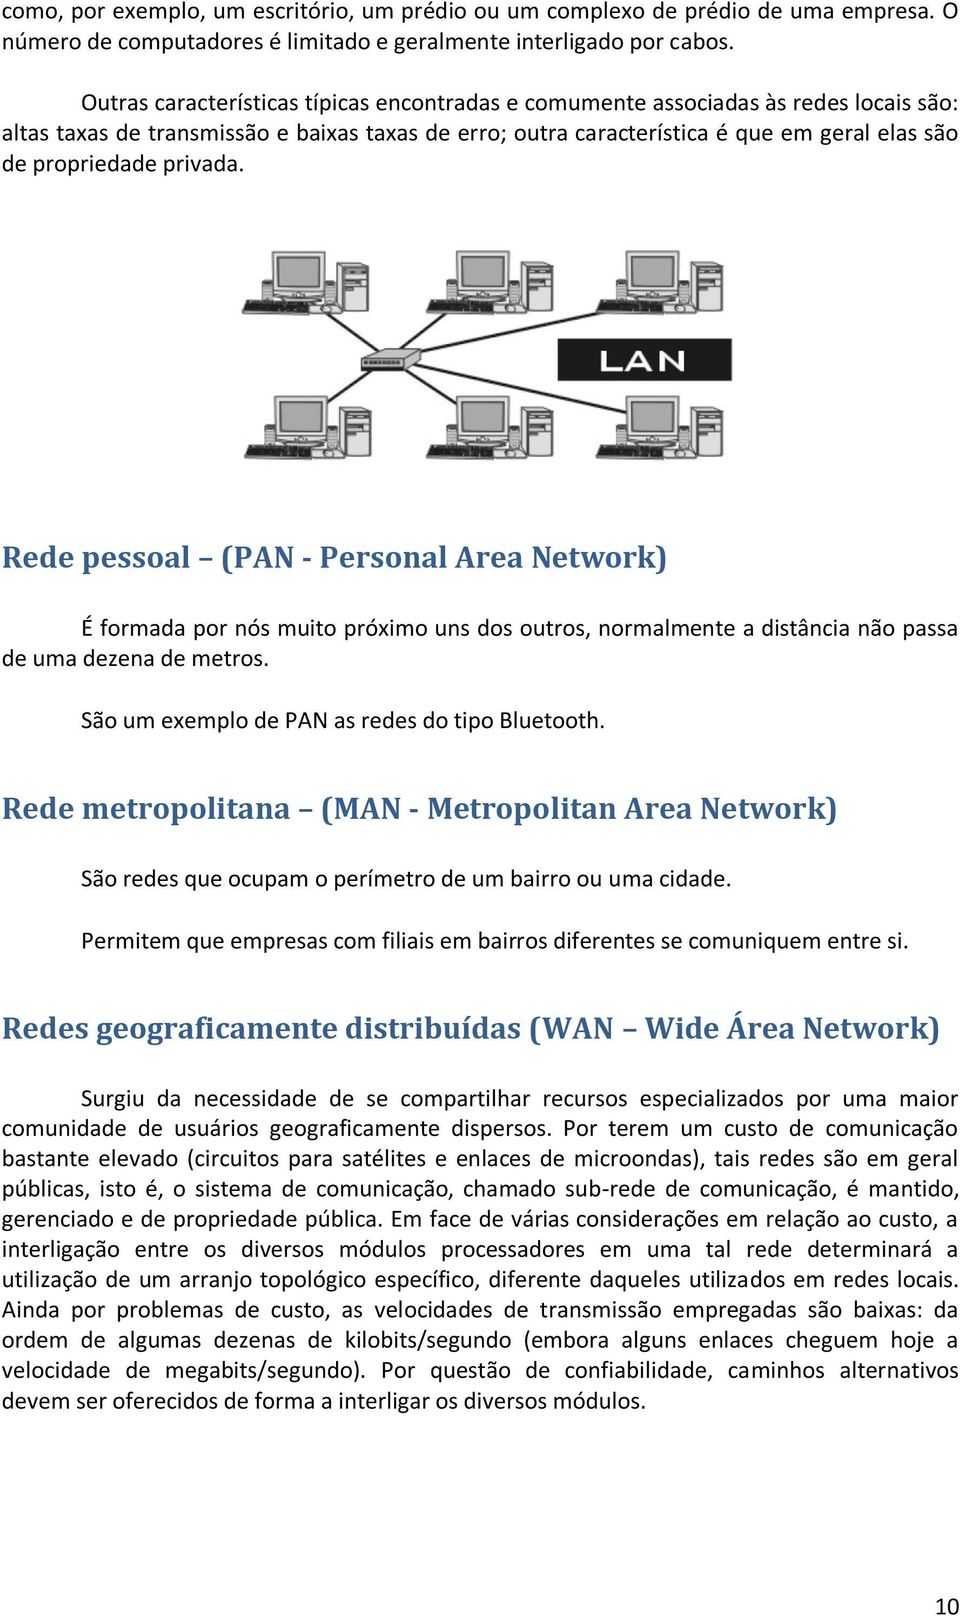 privada. Rede pessoal (PAN - Personal Area Network) É formada por nós muito próximo uns dos outros, normalmente a distância não passa de uma dezena de metros.